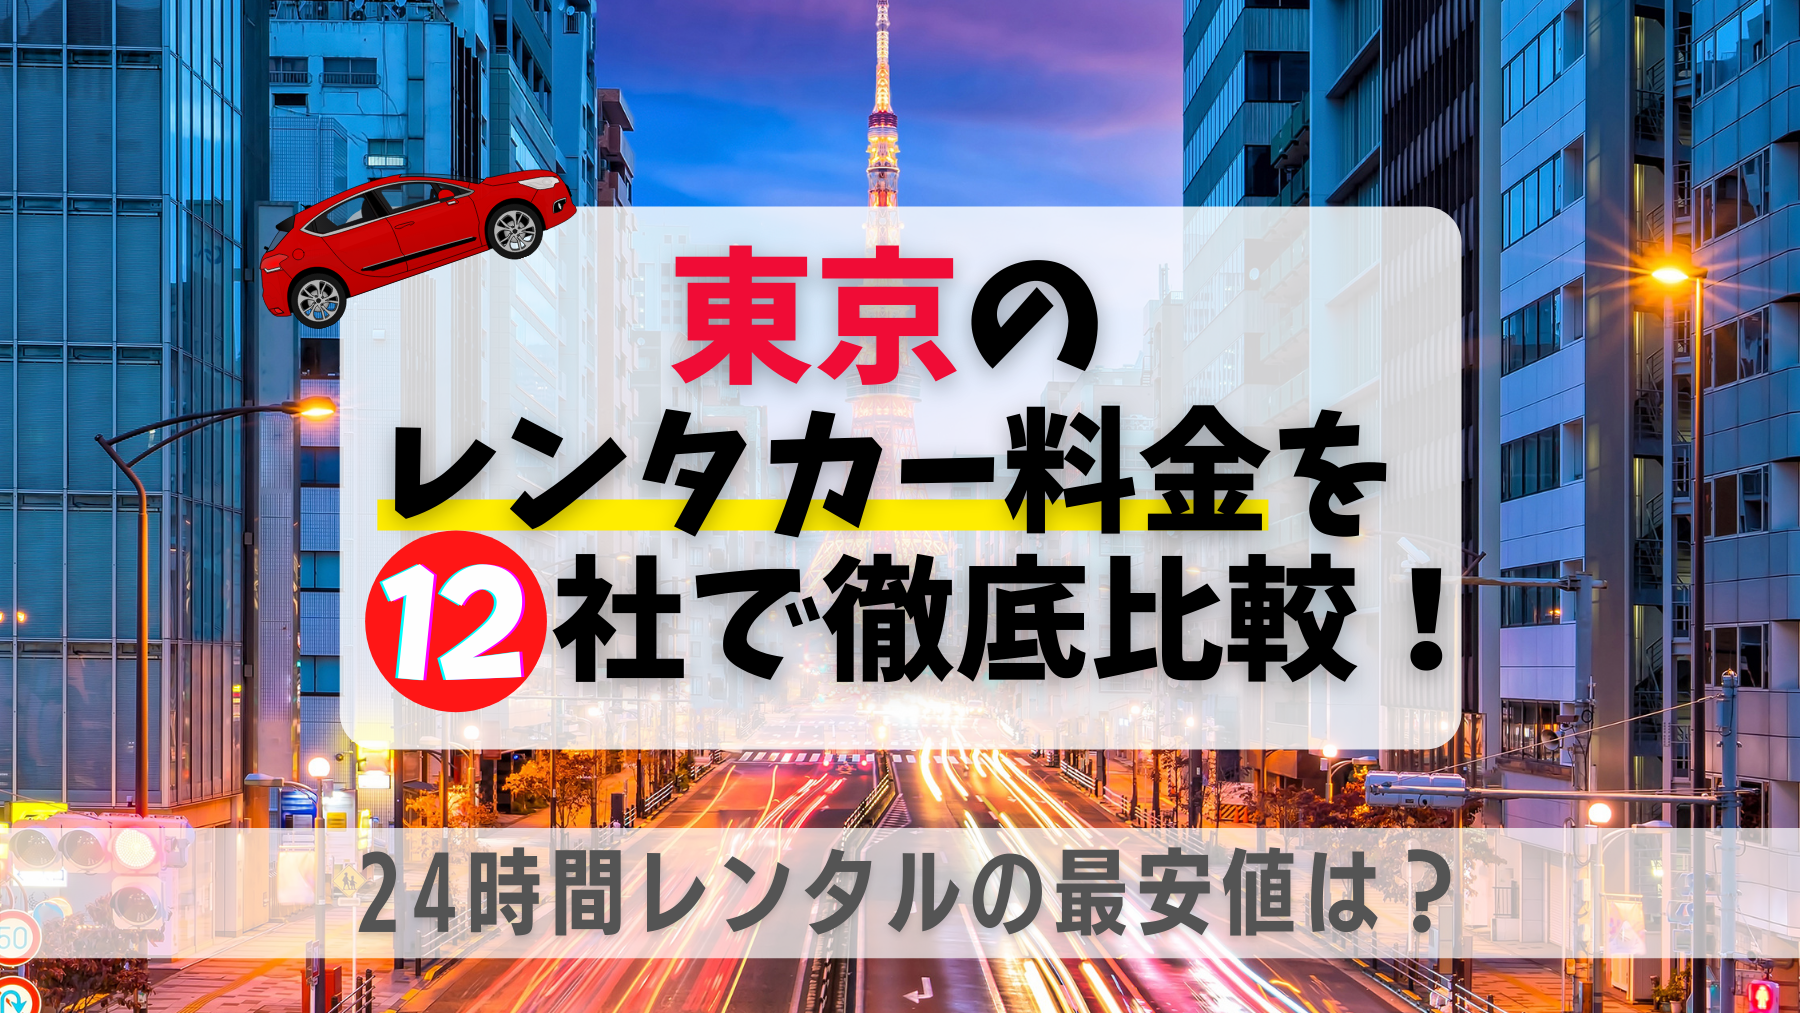 東京のレンタカー料金を12社徹底比較 24時間レンタルの最安値は 格安ウィークリー マンスリー業務レンタカーのブログ